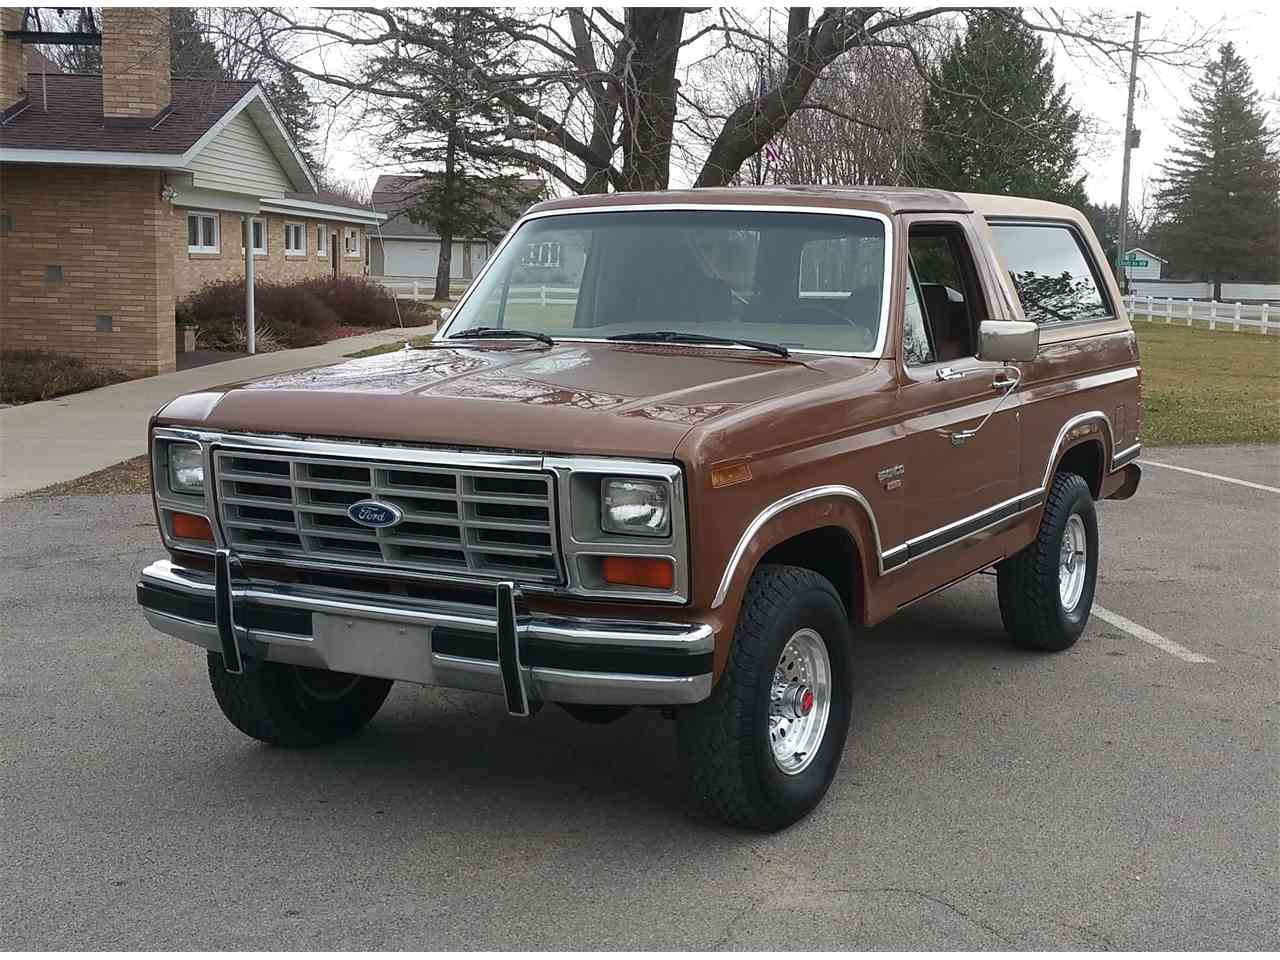 1986 Ford Bronco for Sale | ClassicCars.com | CC-972573